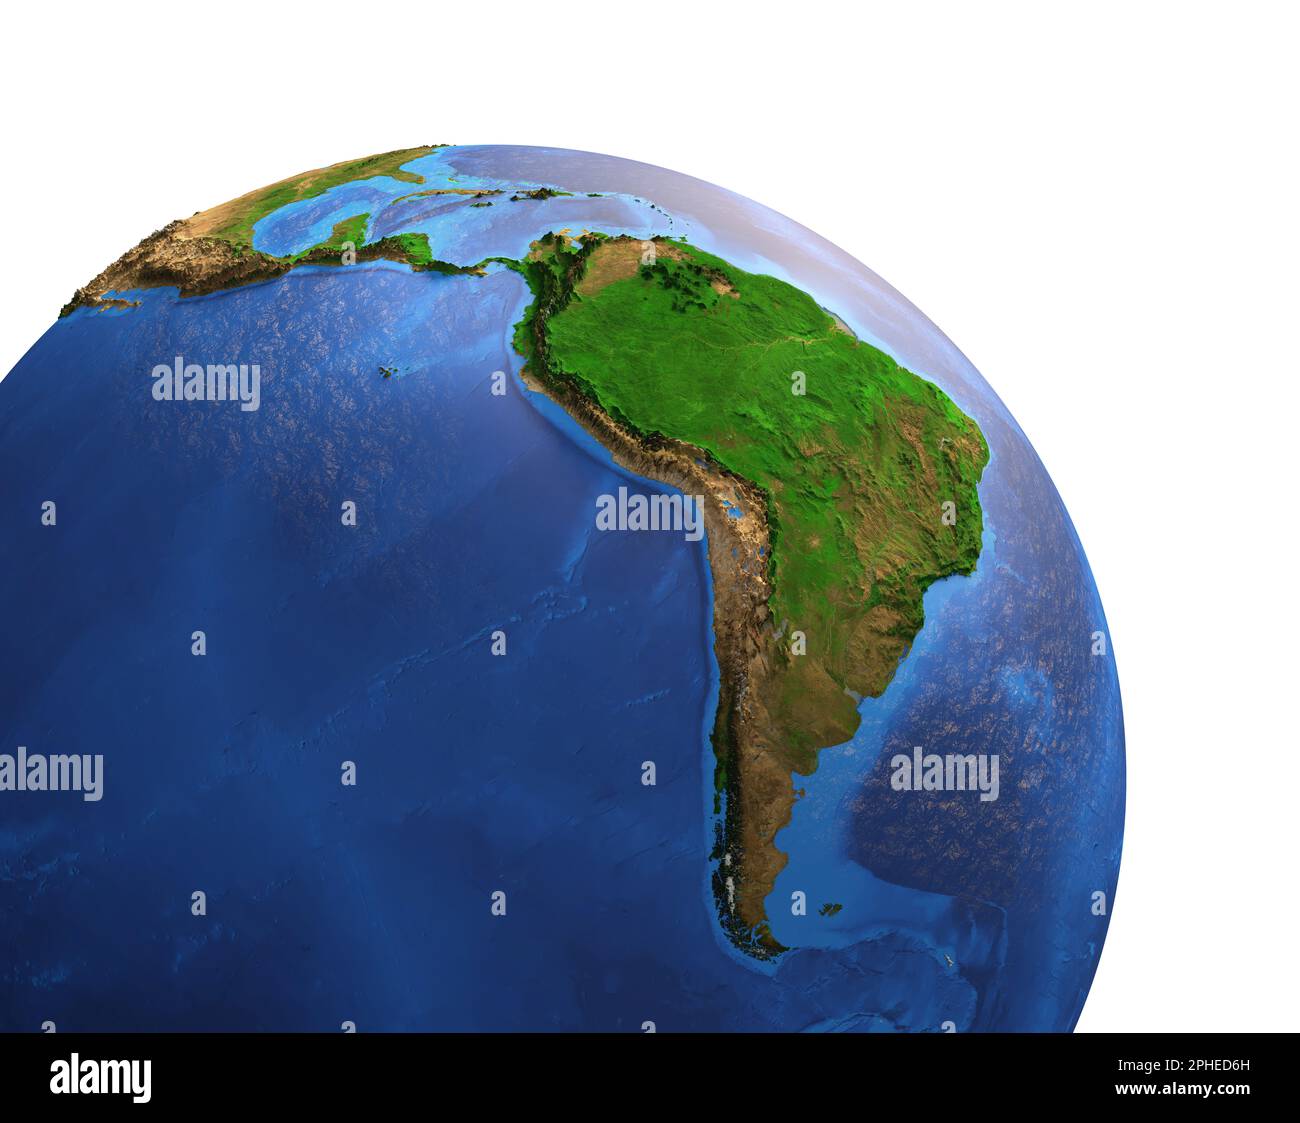 Vue satellite haute résolution de Planet Earth, axée sur l'Amérique du Sud et centrale, le Brésil et la forêt amazonienne - éléments fournis par la NASA Banque D'Images